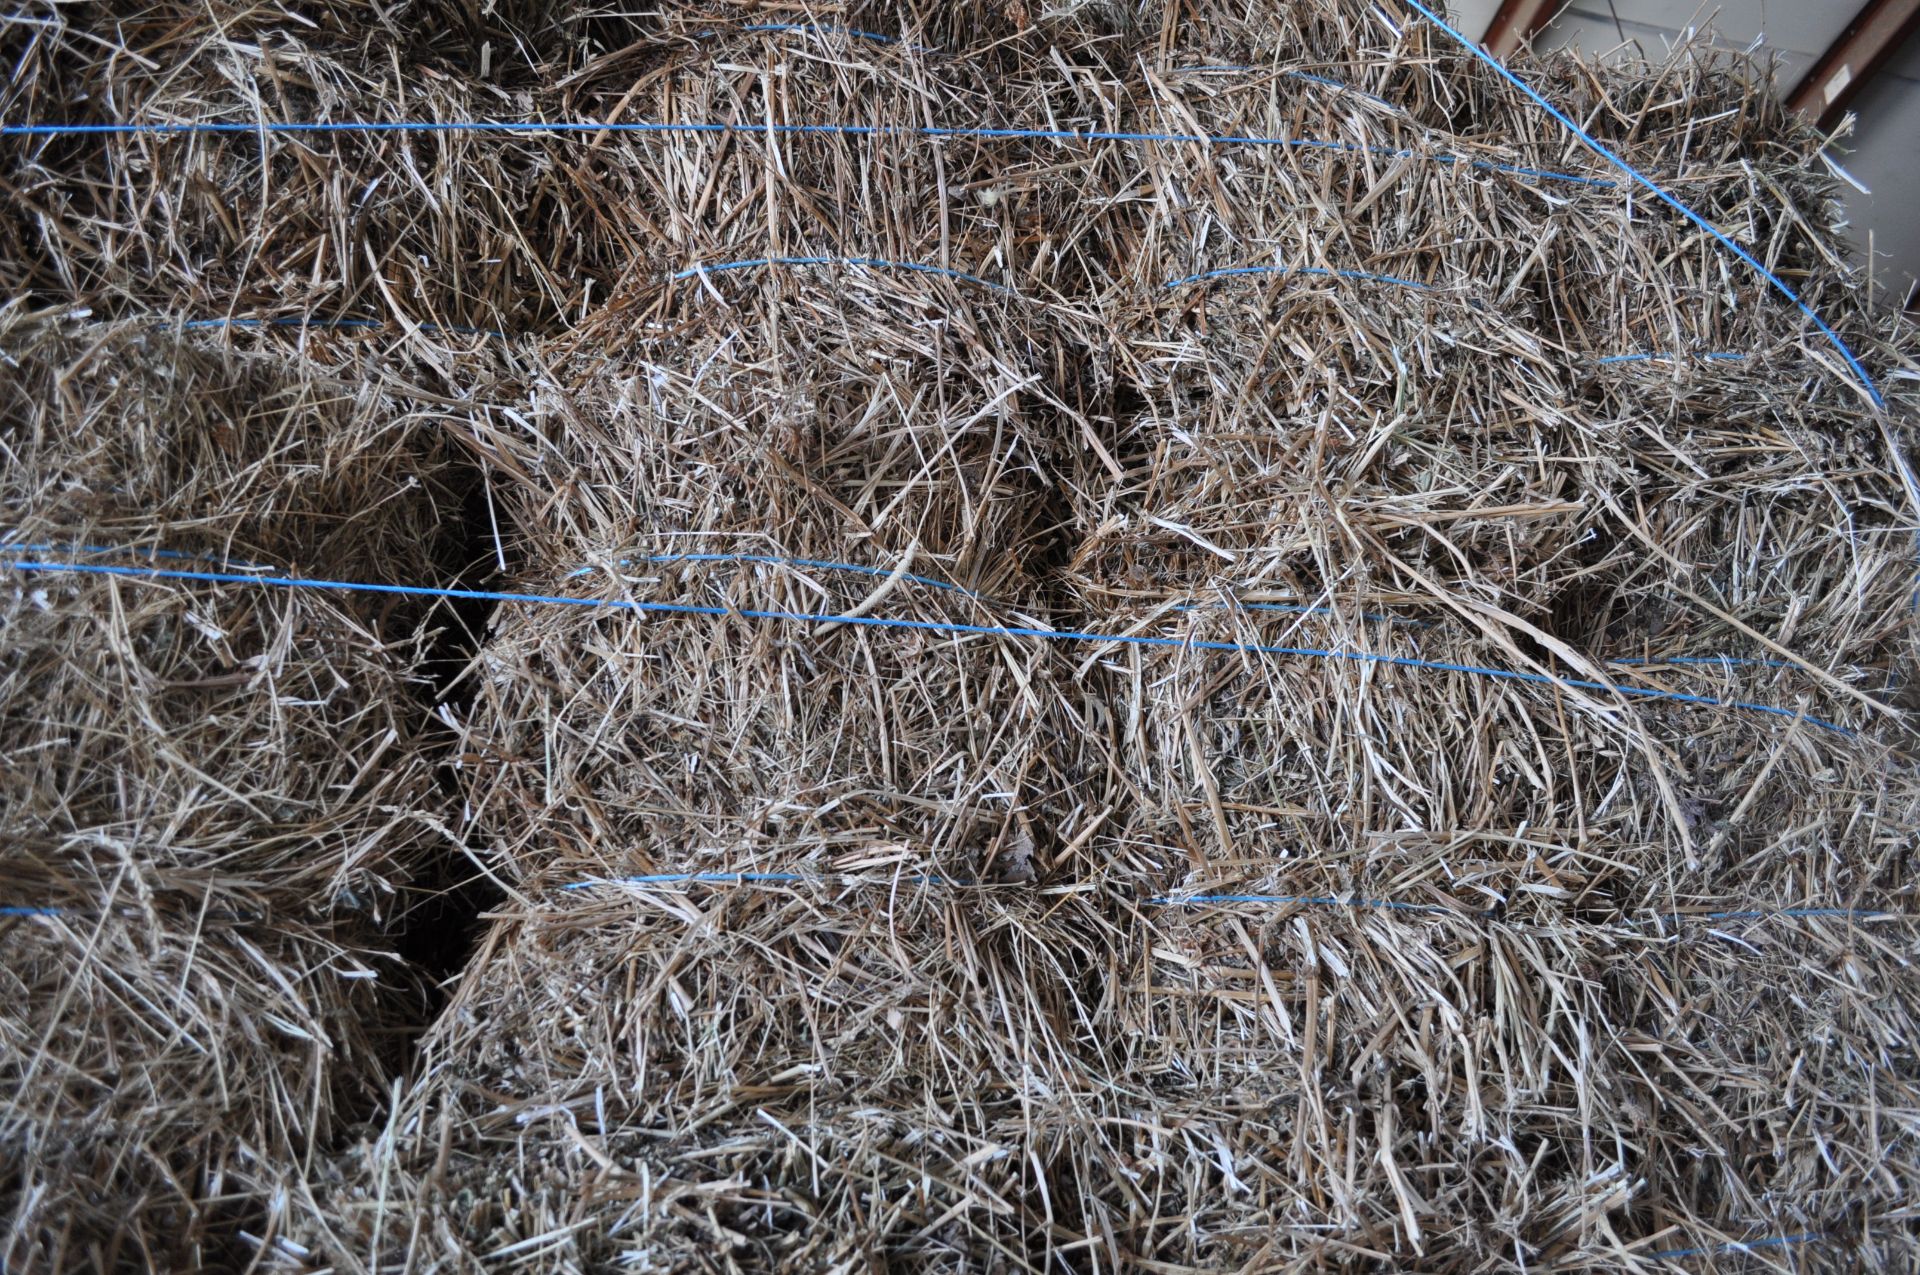 80 bales of mixed grass hay